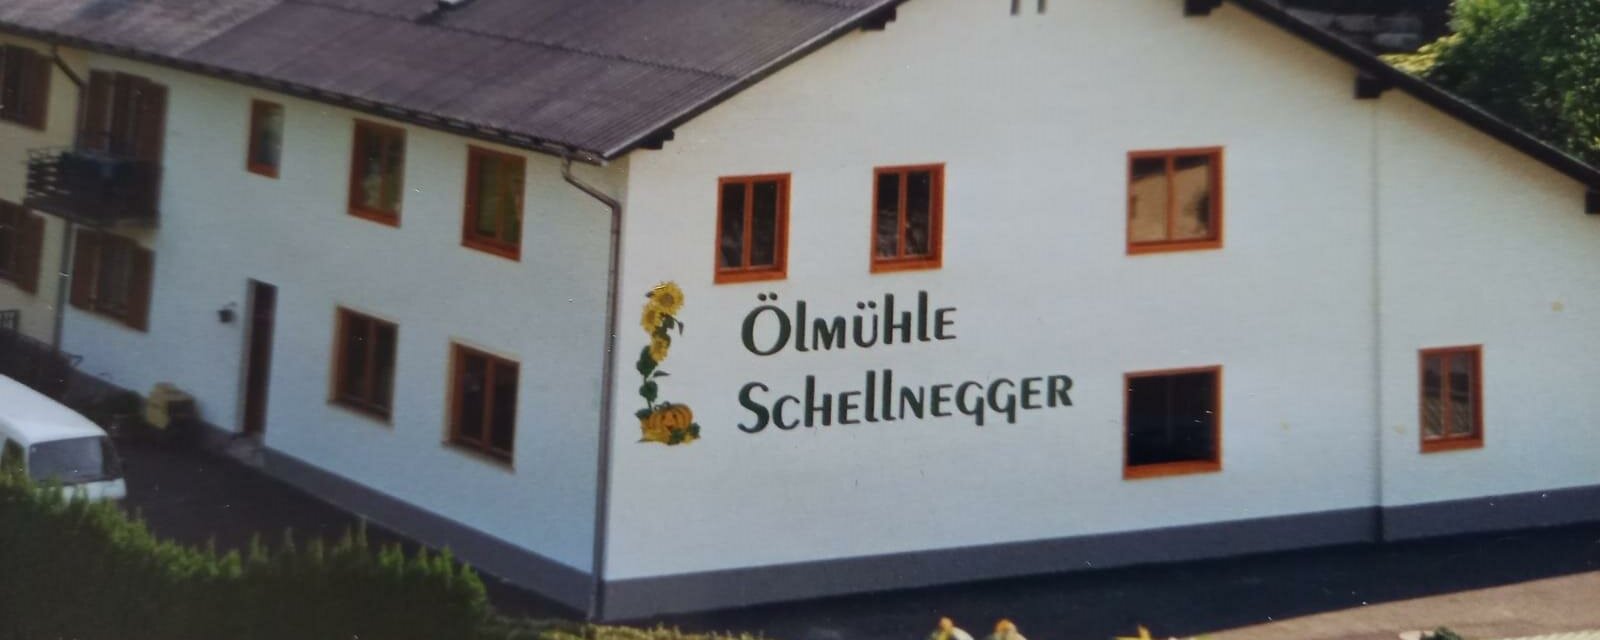 Ölmühle Schellnegger_außen_Oststeiermark | © Ölmühle Schellnegger